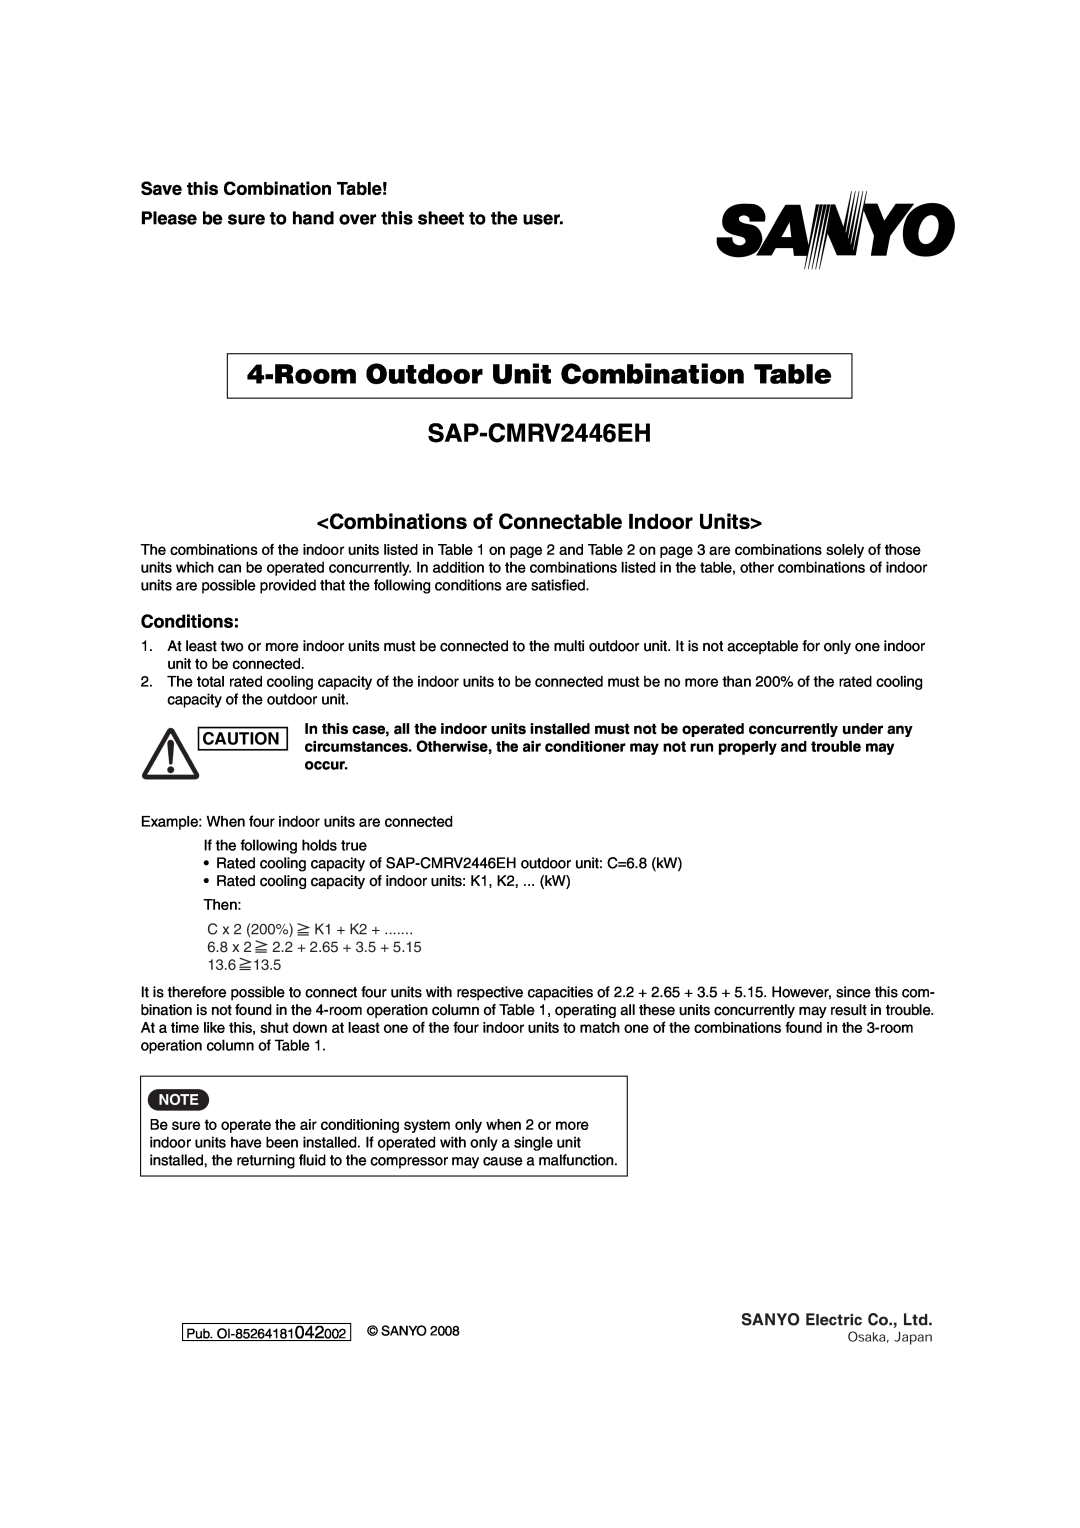 Sanyo SAP-CMRV1426EH-F RoomOutdoor Unit Combination Table, SAP-CMRV2446EH, <Combinations of Connectable Indoor Units> 